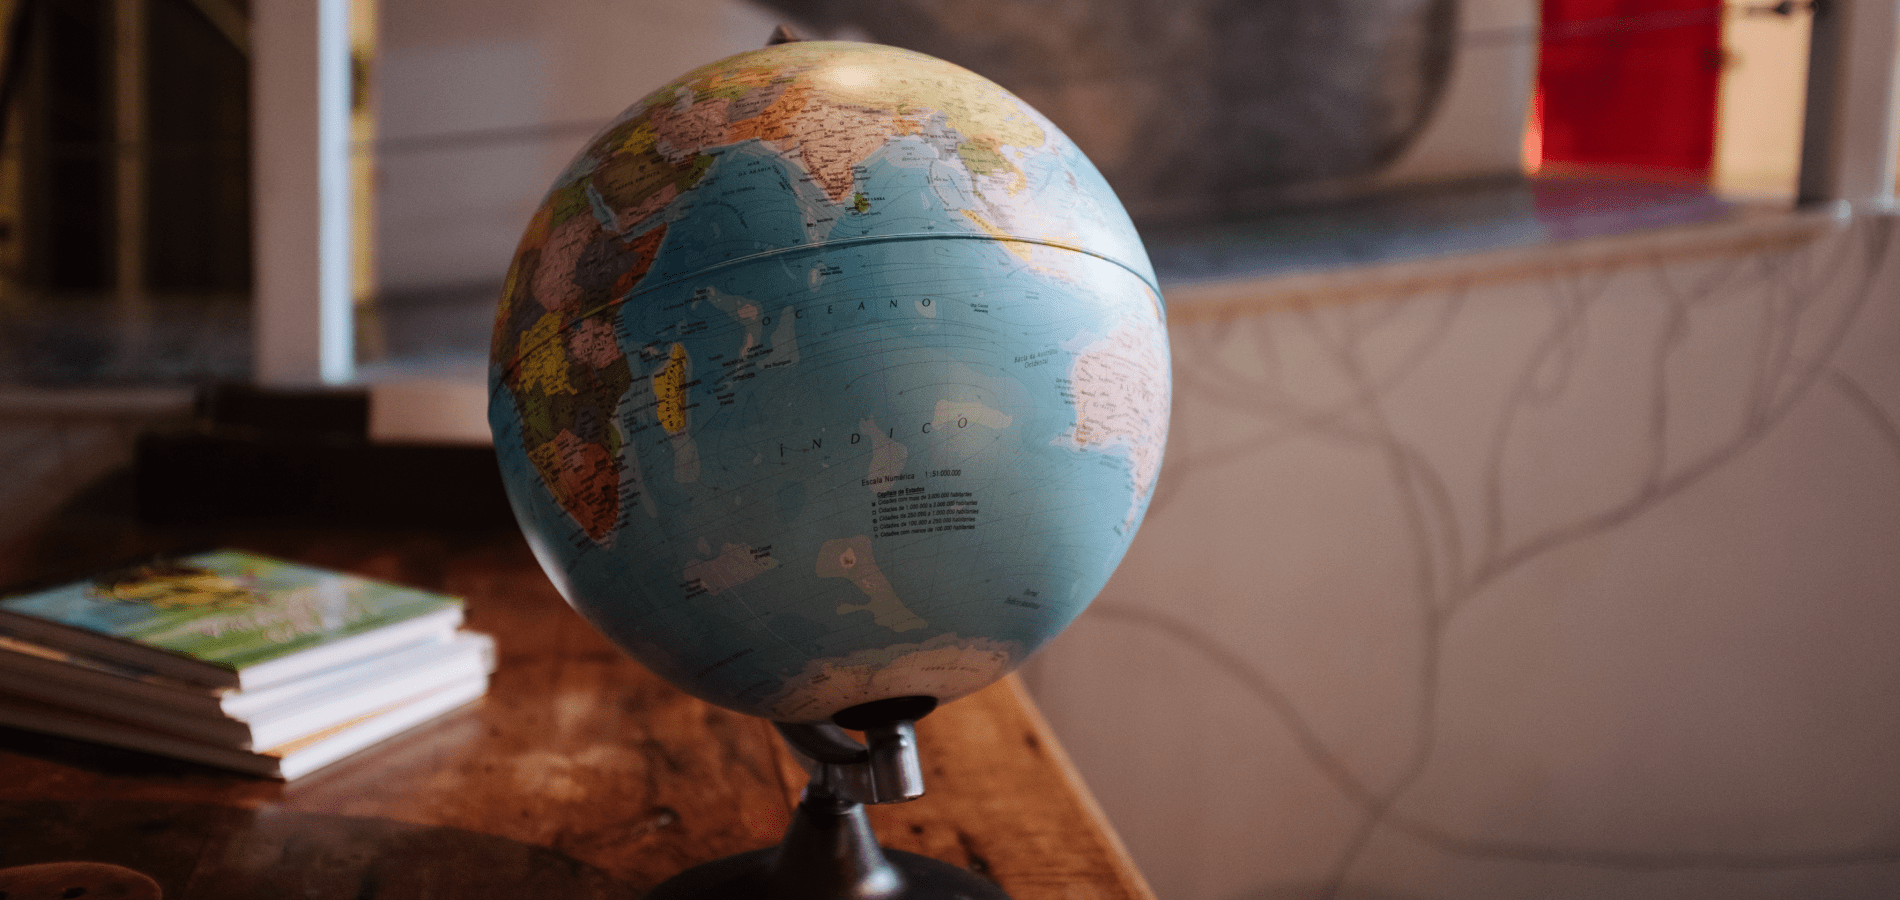 World Globe on a desk